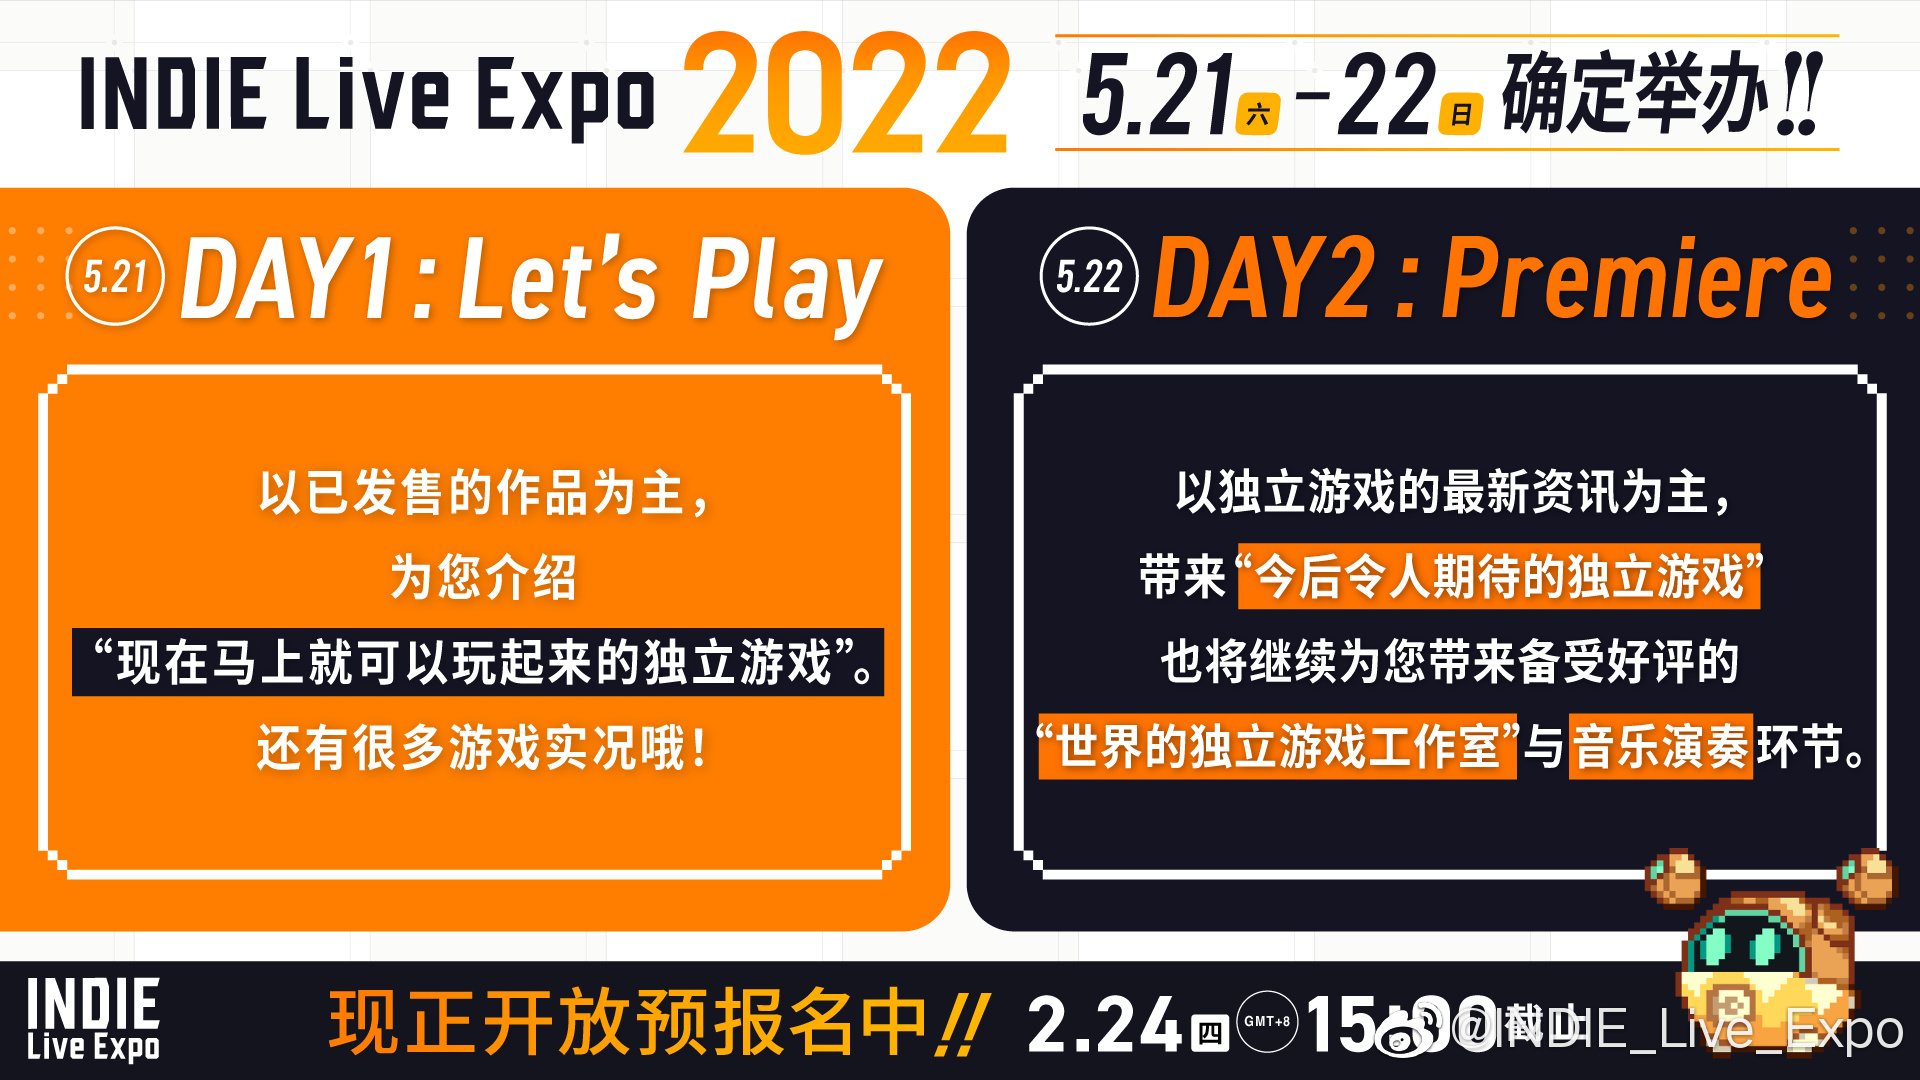 日本独立游戏展 INDIE Live Expo 于昨日（2 月 1 日）宣布，2022 年线上展览活动将于 5 月 21 日至 22 日举行。插图1